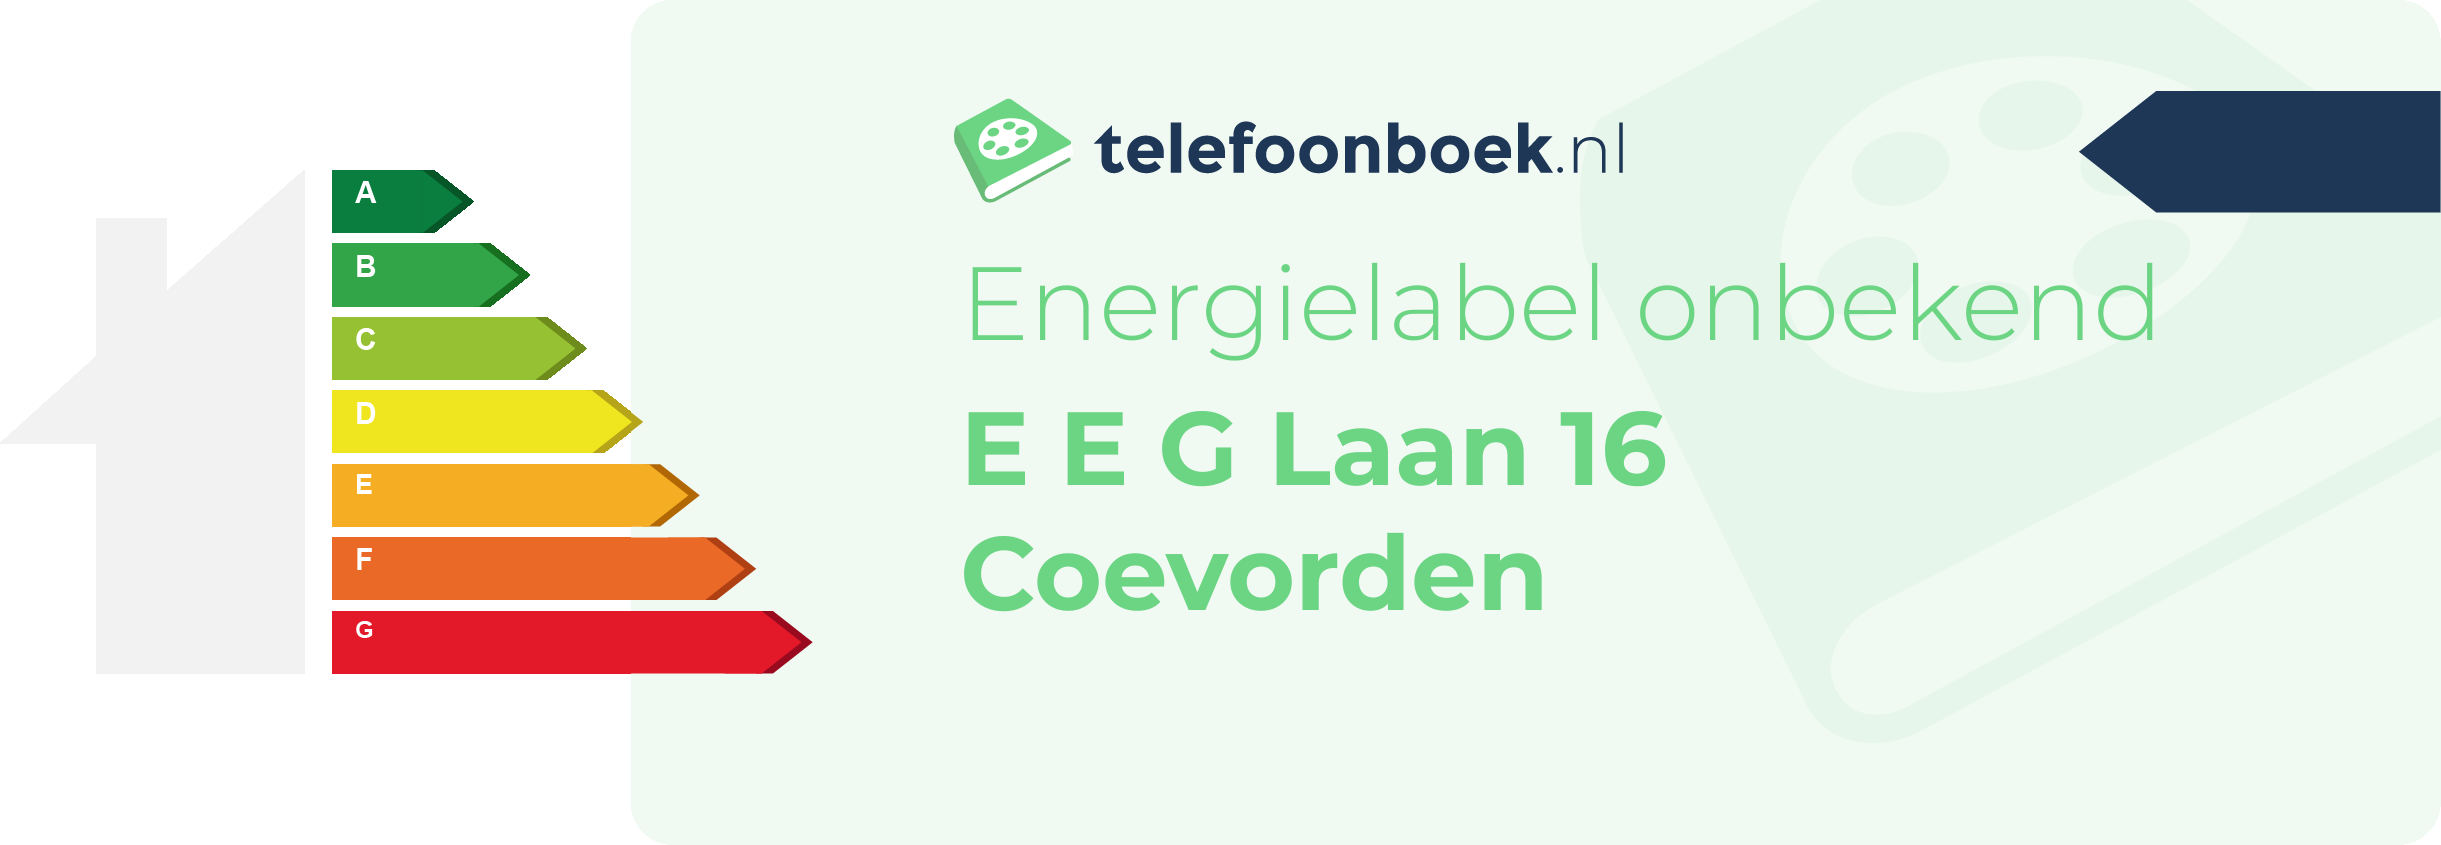 Energielabel E E G Laan 16 Coevorden